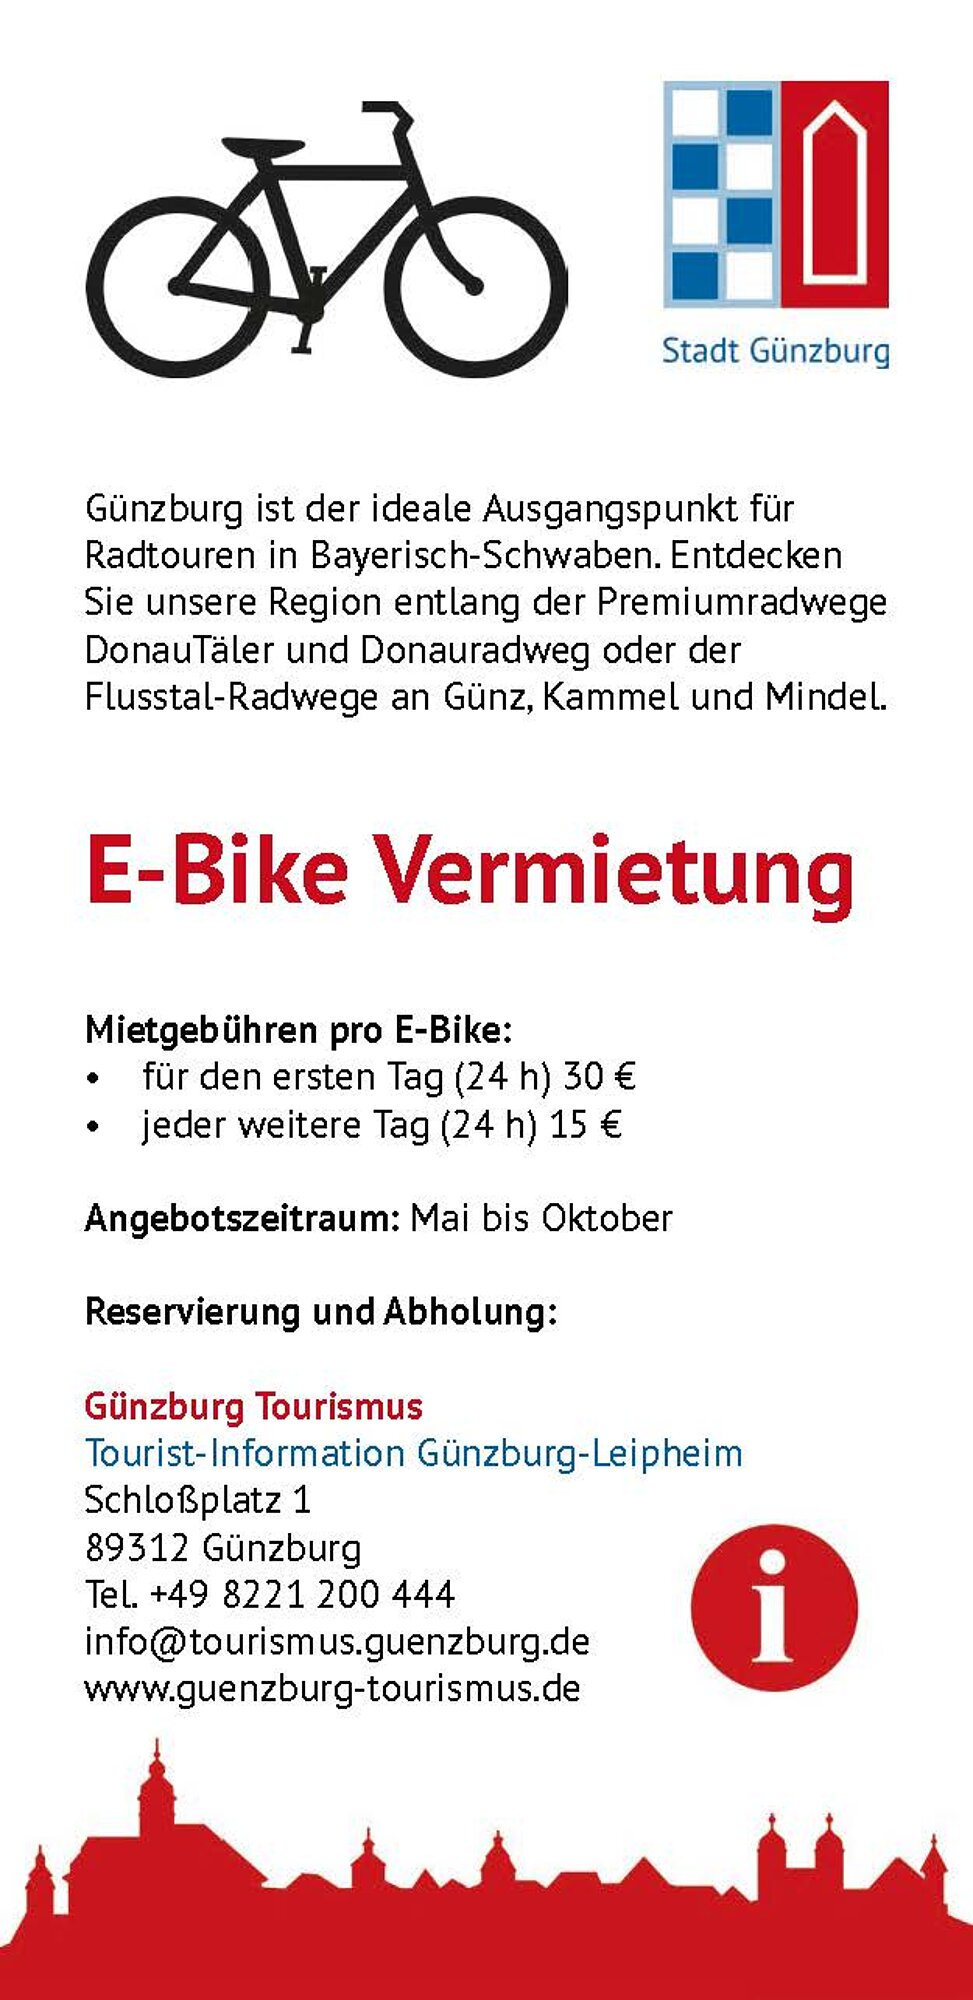 E-Bike Vermietung der Tourist-Information Günzburg